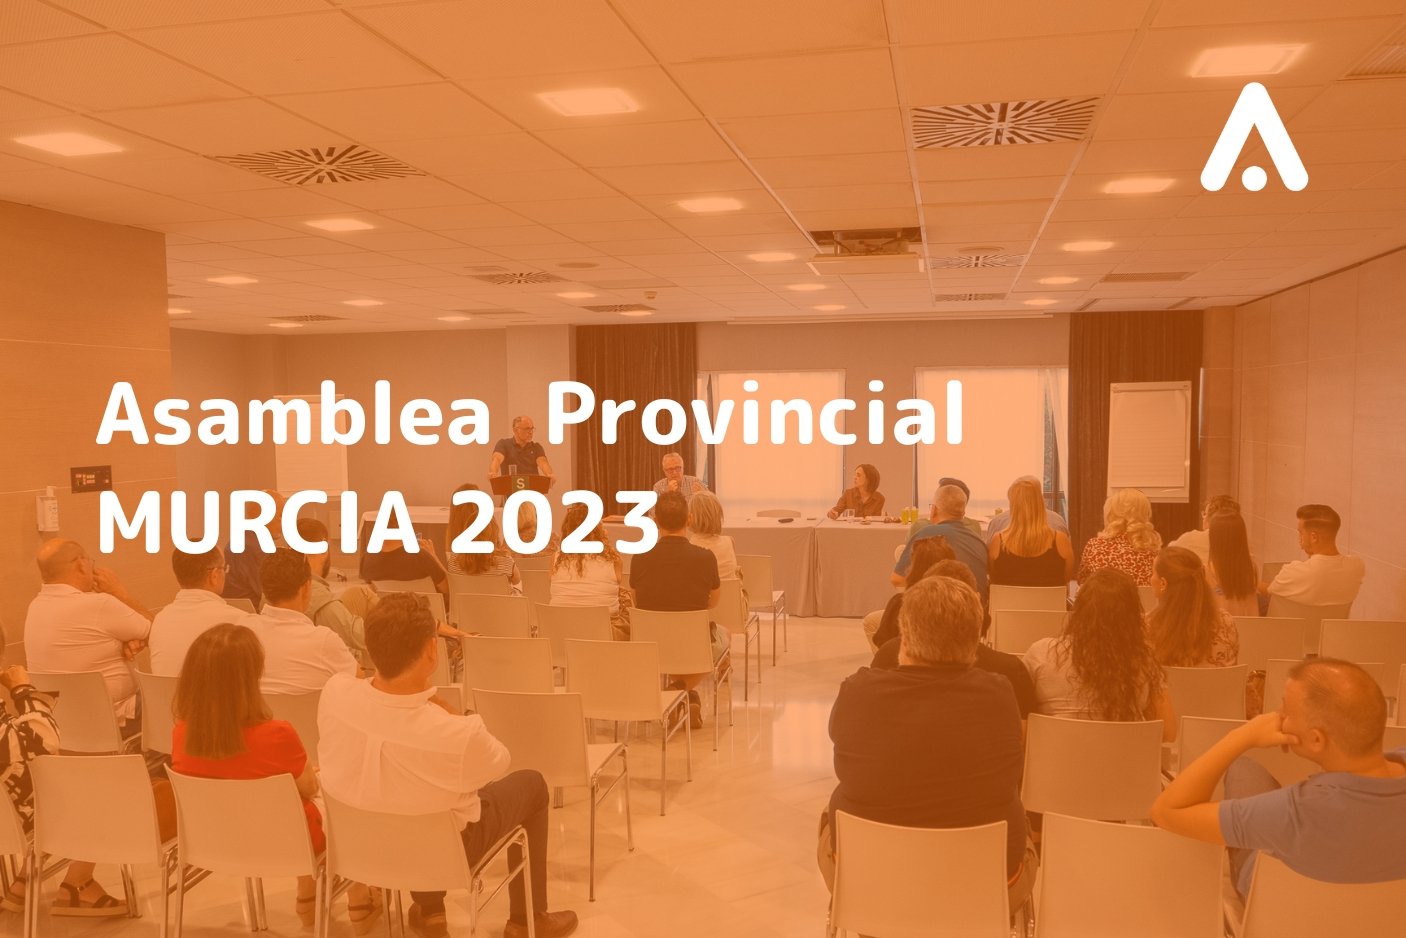 asamblea provincial murcia 2023 - blog de ANAPAL